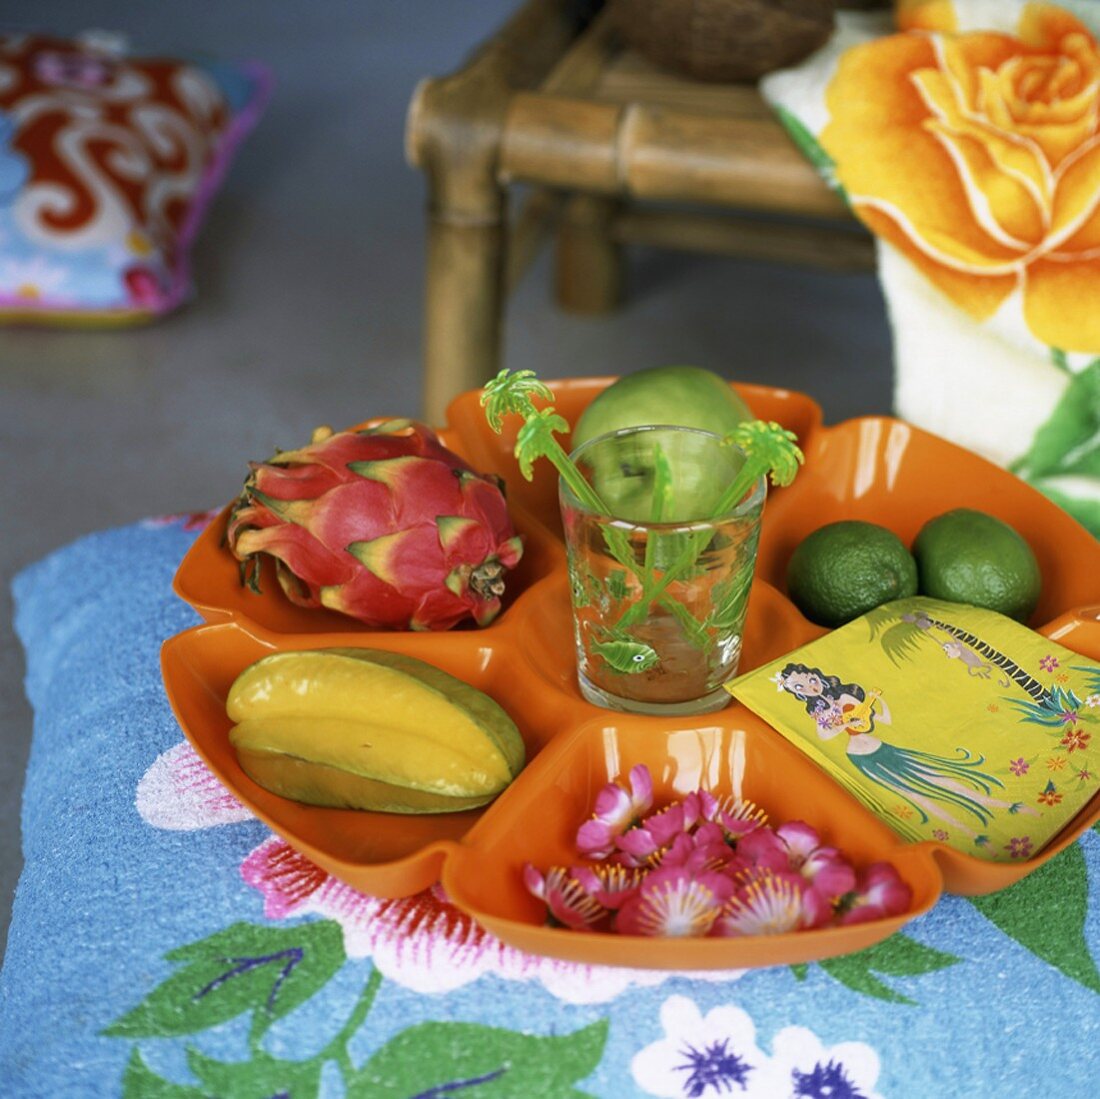 Schale mit exotischen Früchten dekoriert – Bild kaufen – 345356 ...